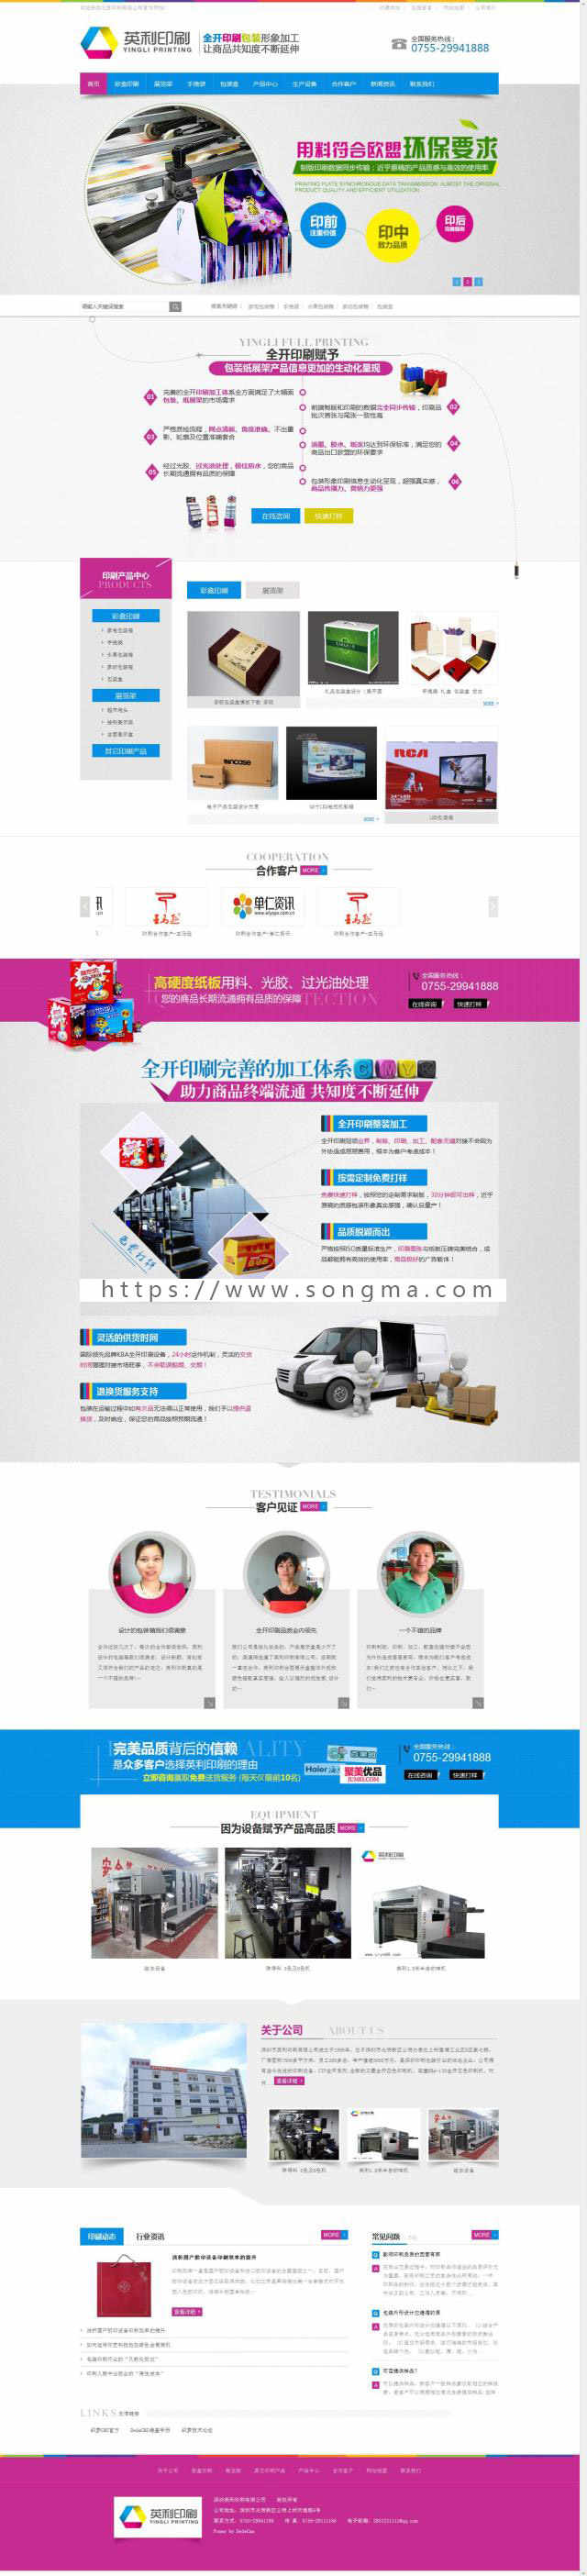 印务公司 印刷企业网站模板 PHP网站源码 营销型模板 dede织梦